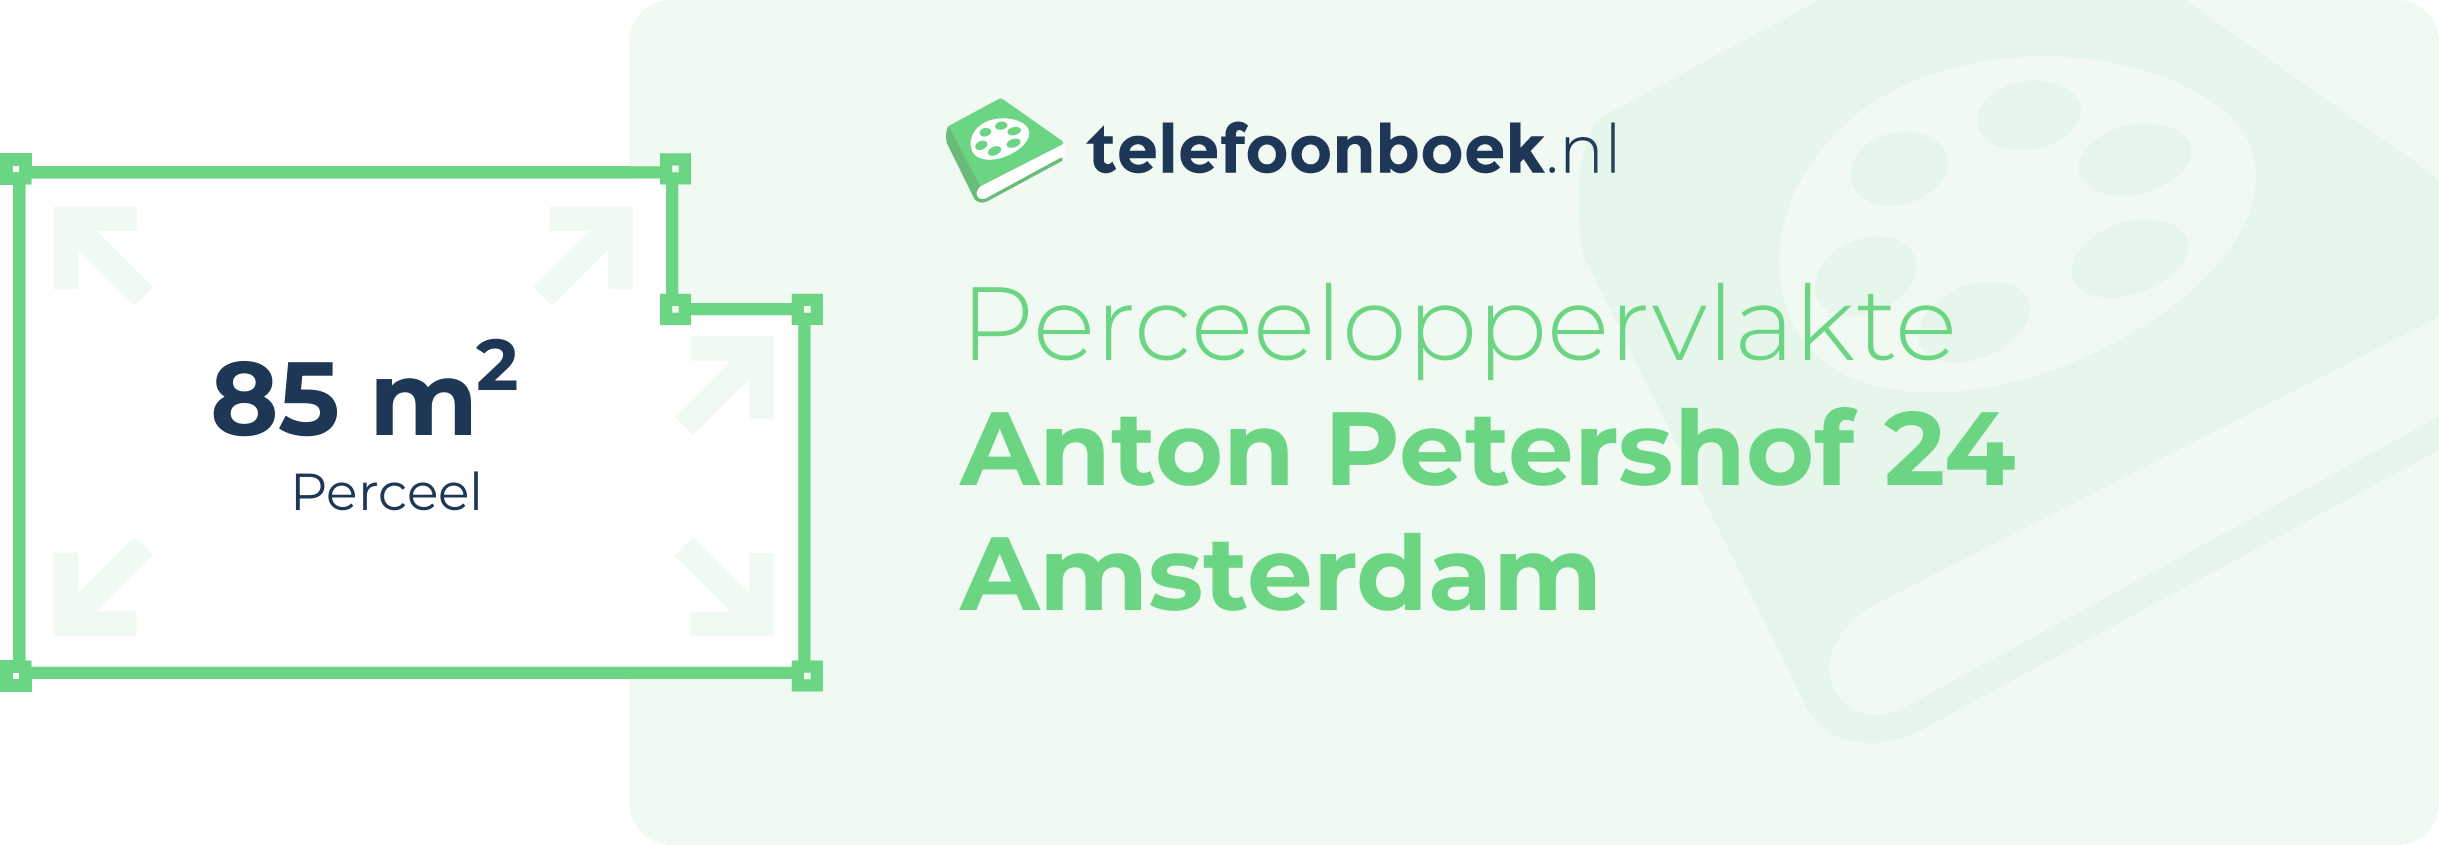 Perceeloppervlakte Anton Petershof 24 Amsterdam